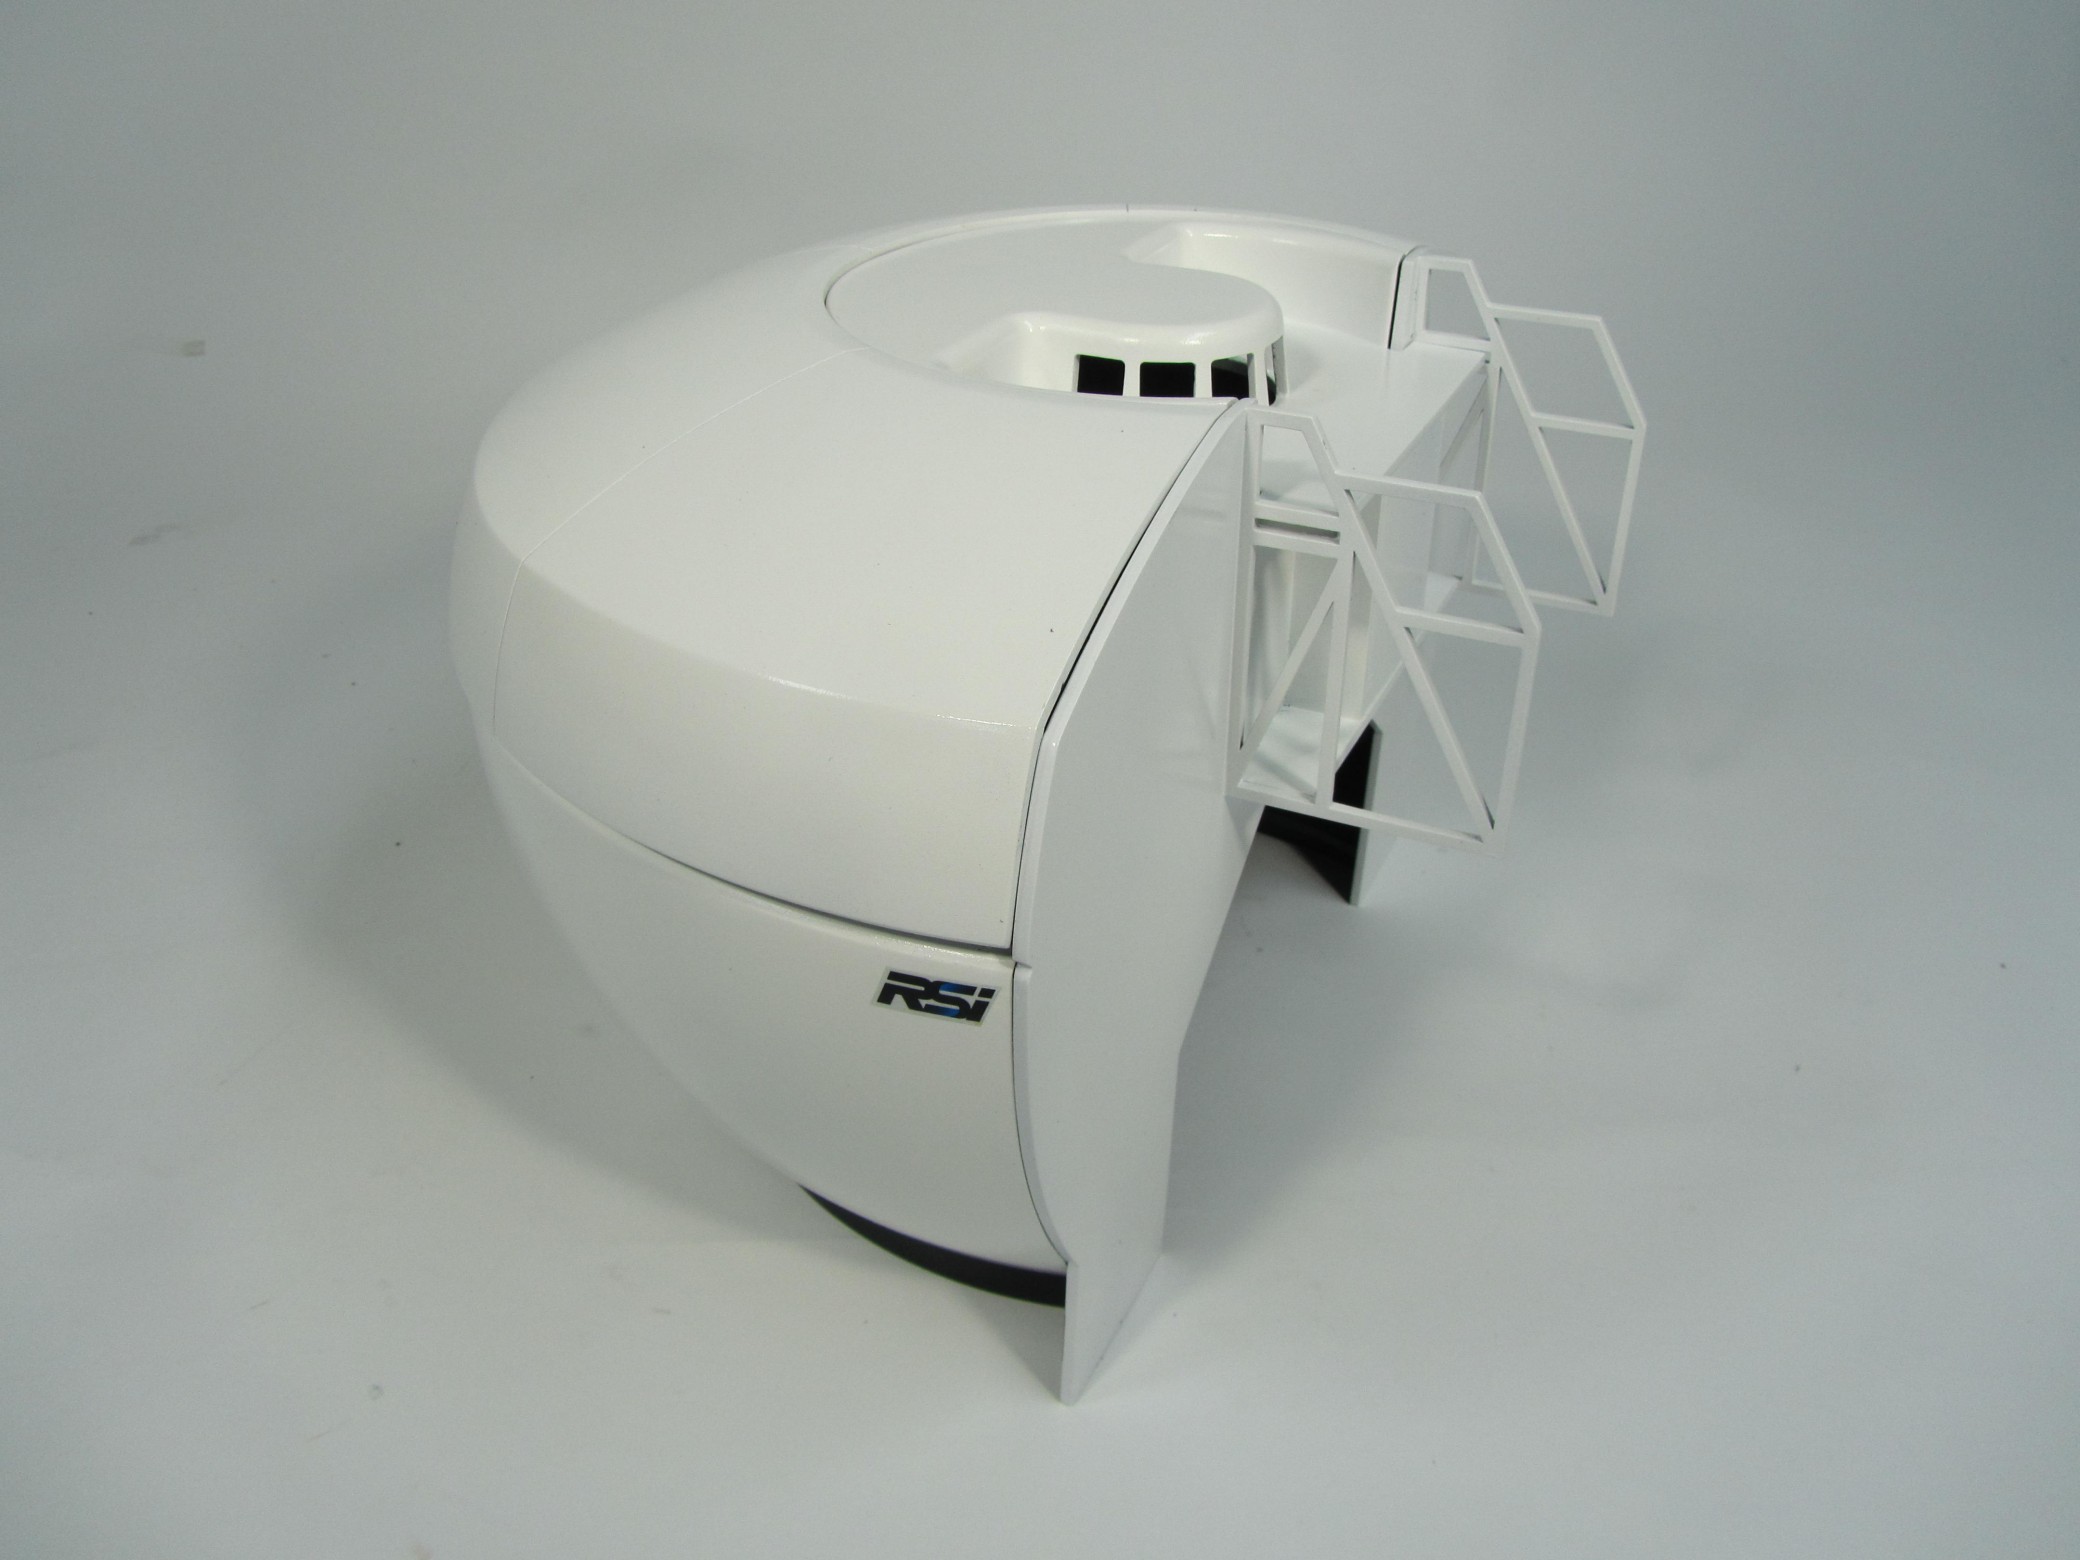 aircraft simulator model